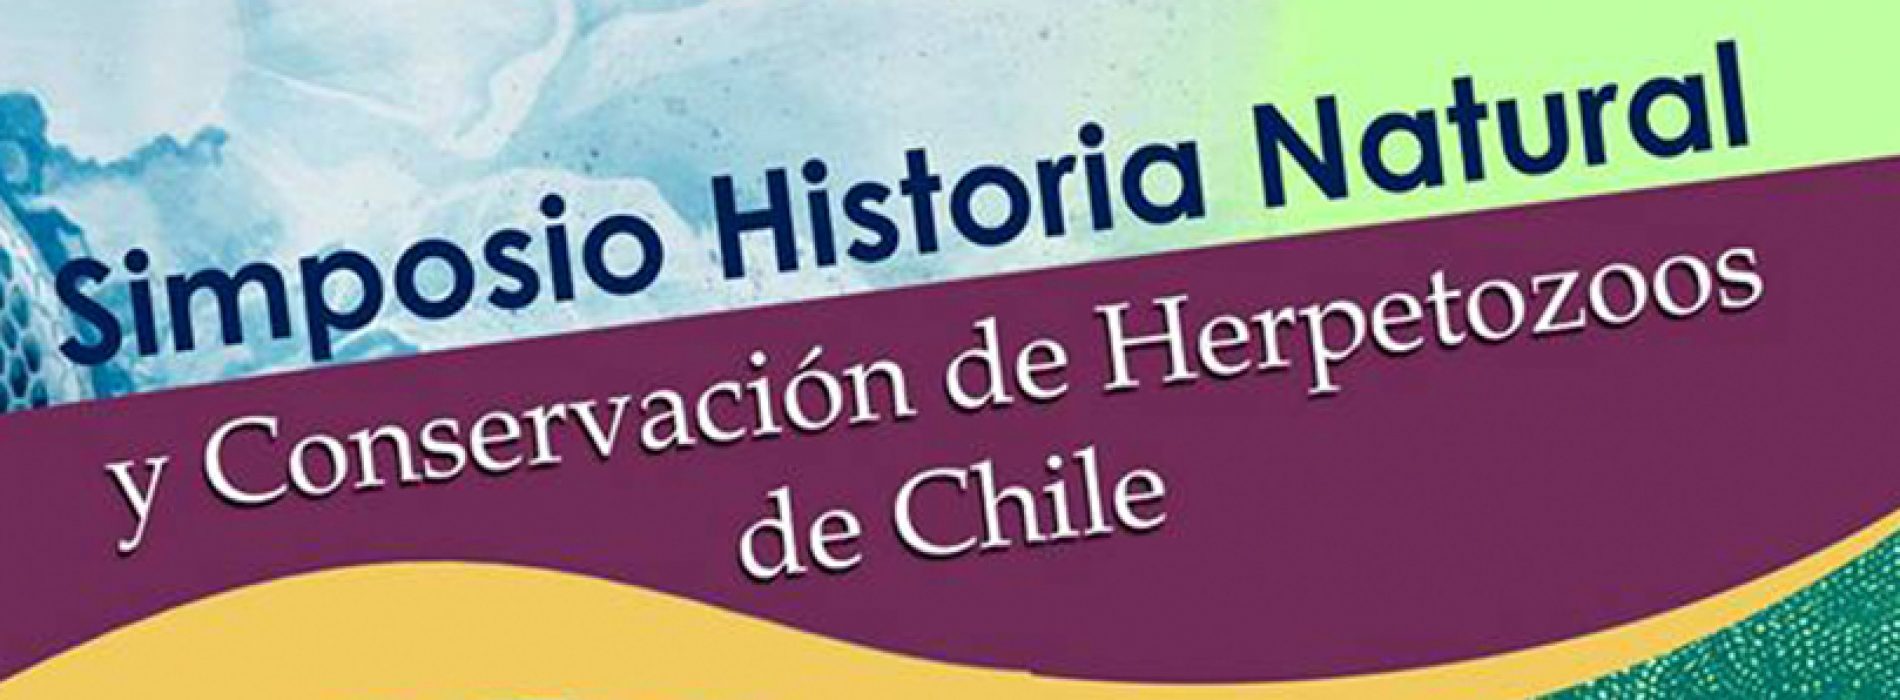 Simposio Historia Natural y Conservación de Herpetozoos de Chile